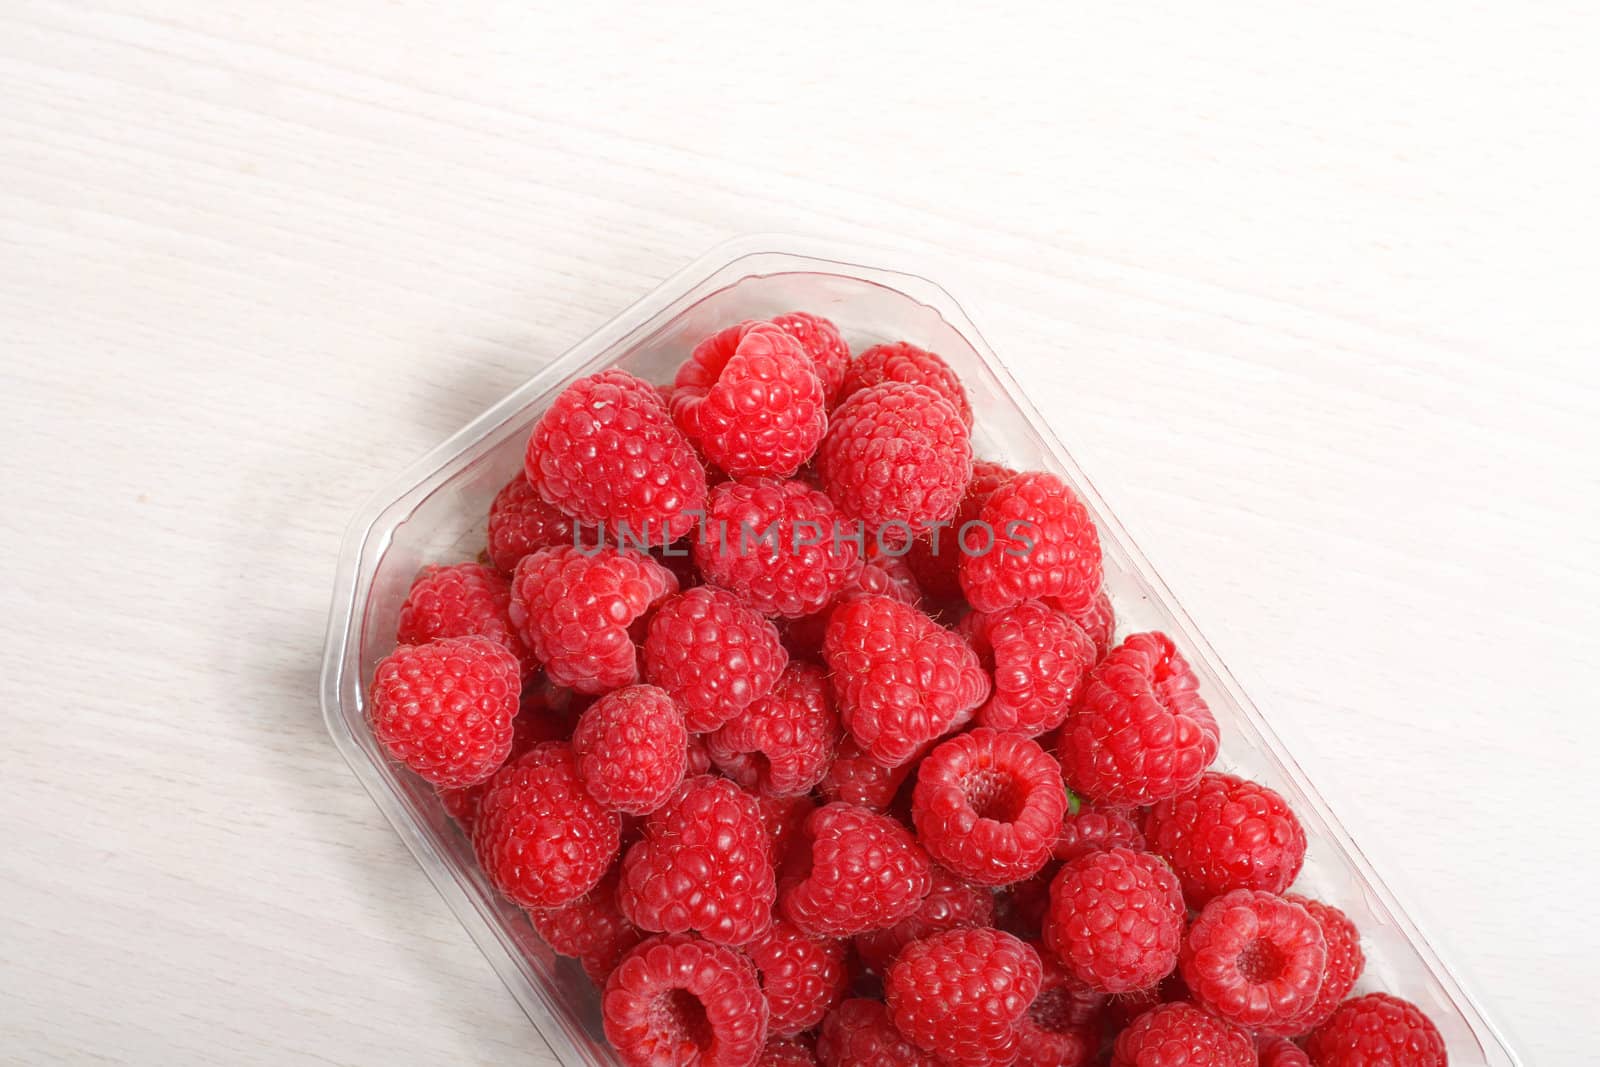 Raspberries by leeser